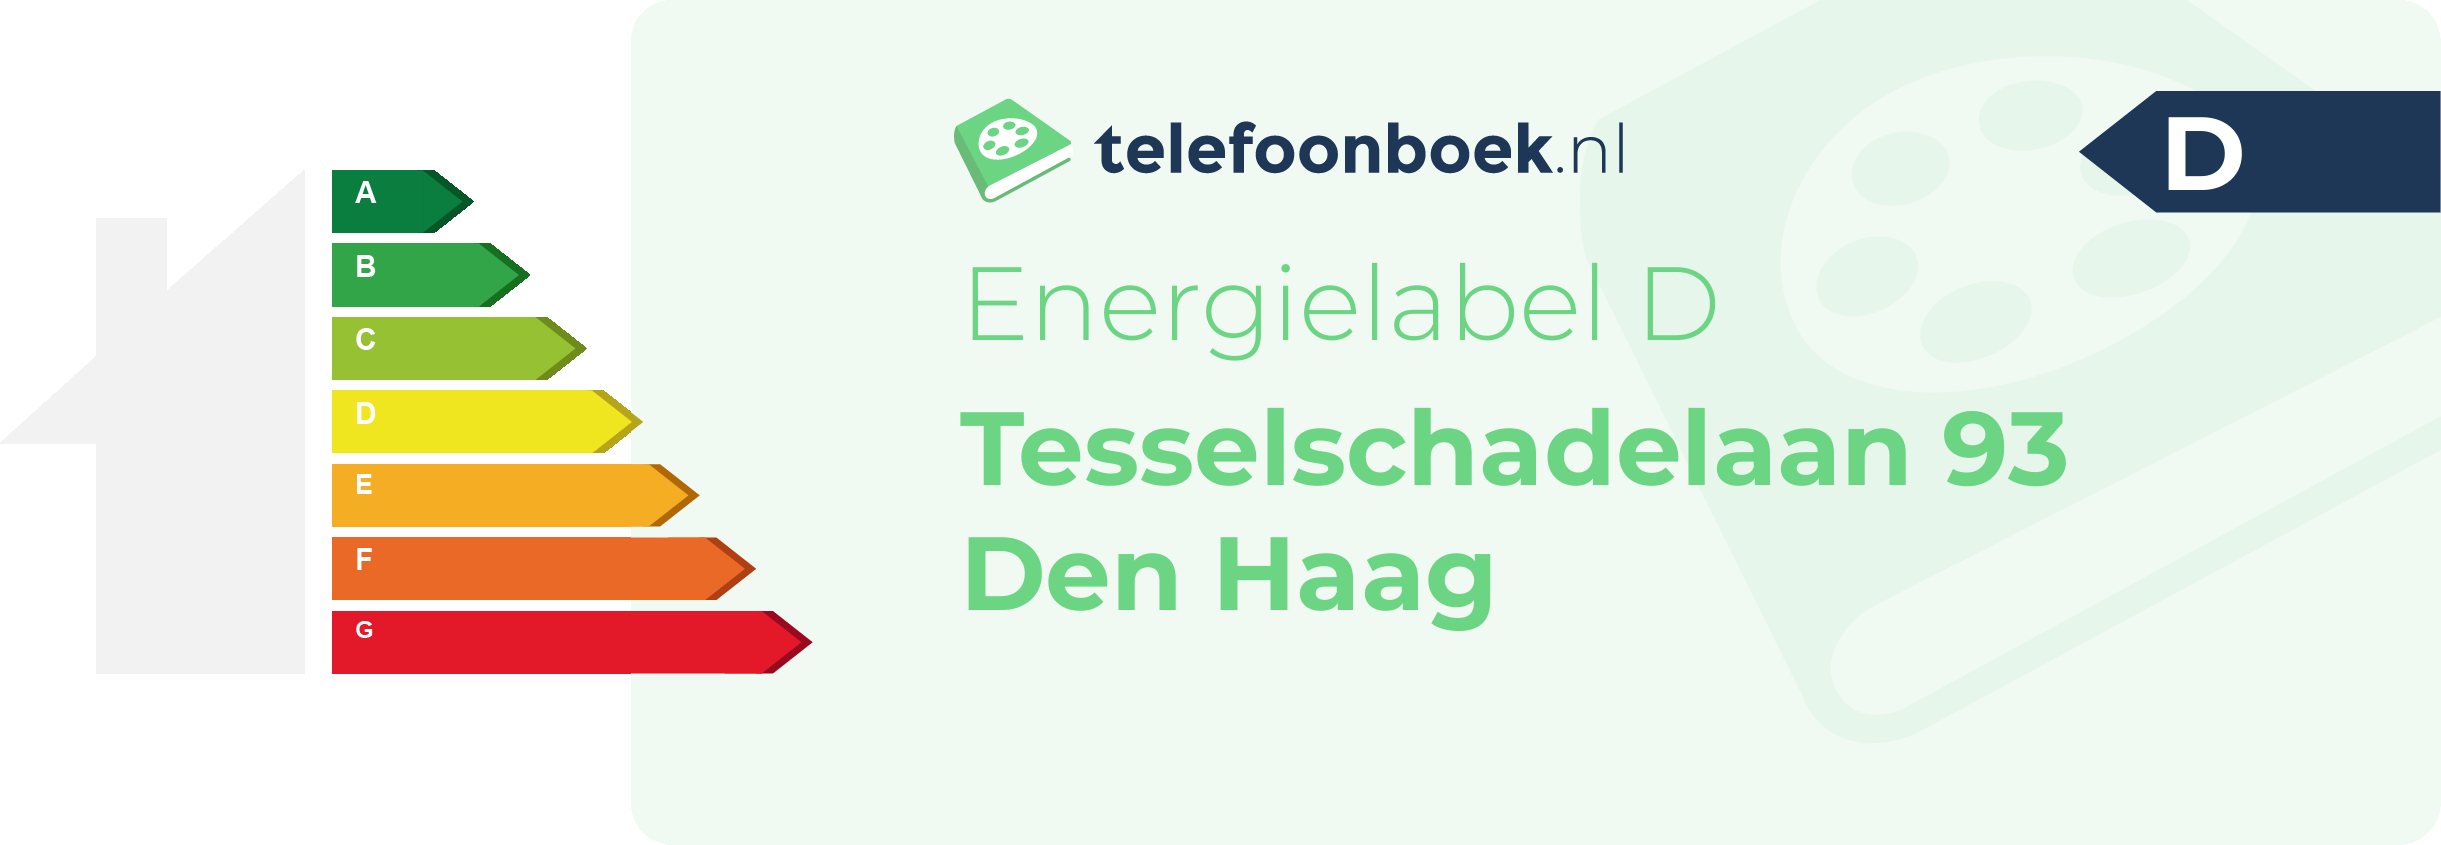 Energielabel Tesselschadelaan 93 Den Haag